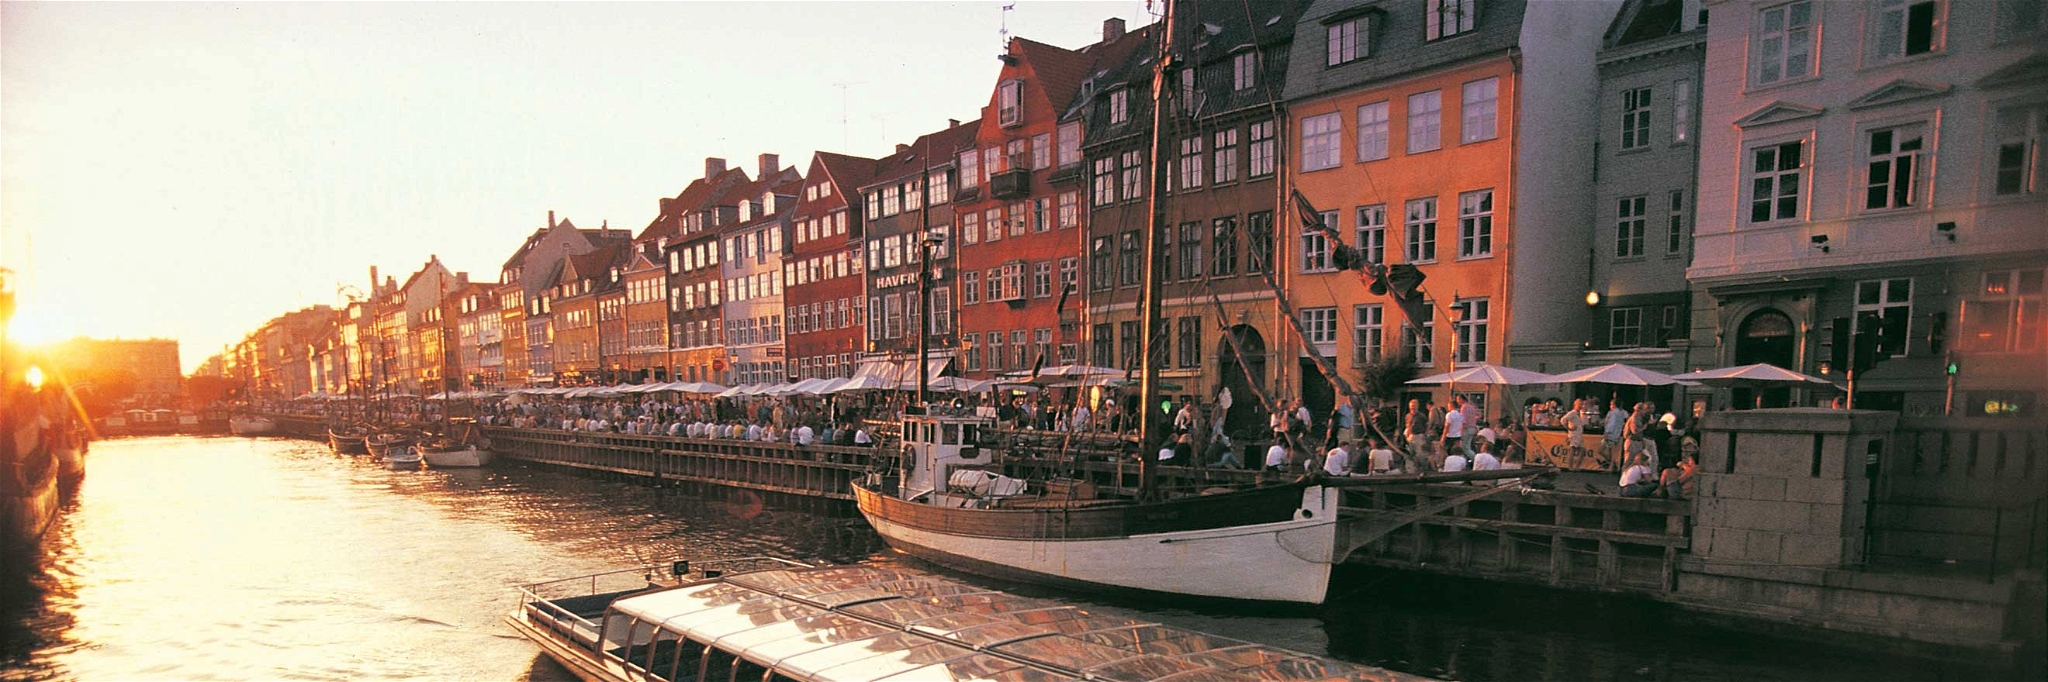 Kopenhagen ist eine perfekte Destination für ein verlängertes Wochenende.